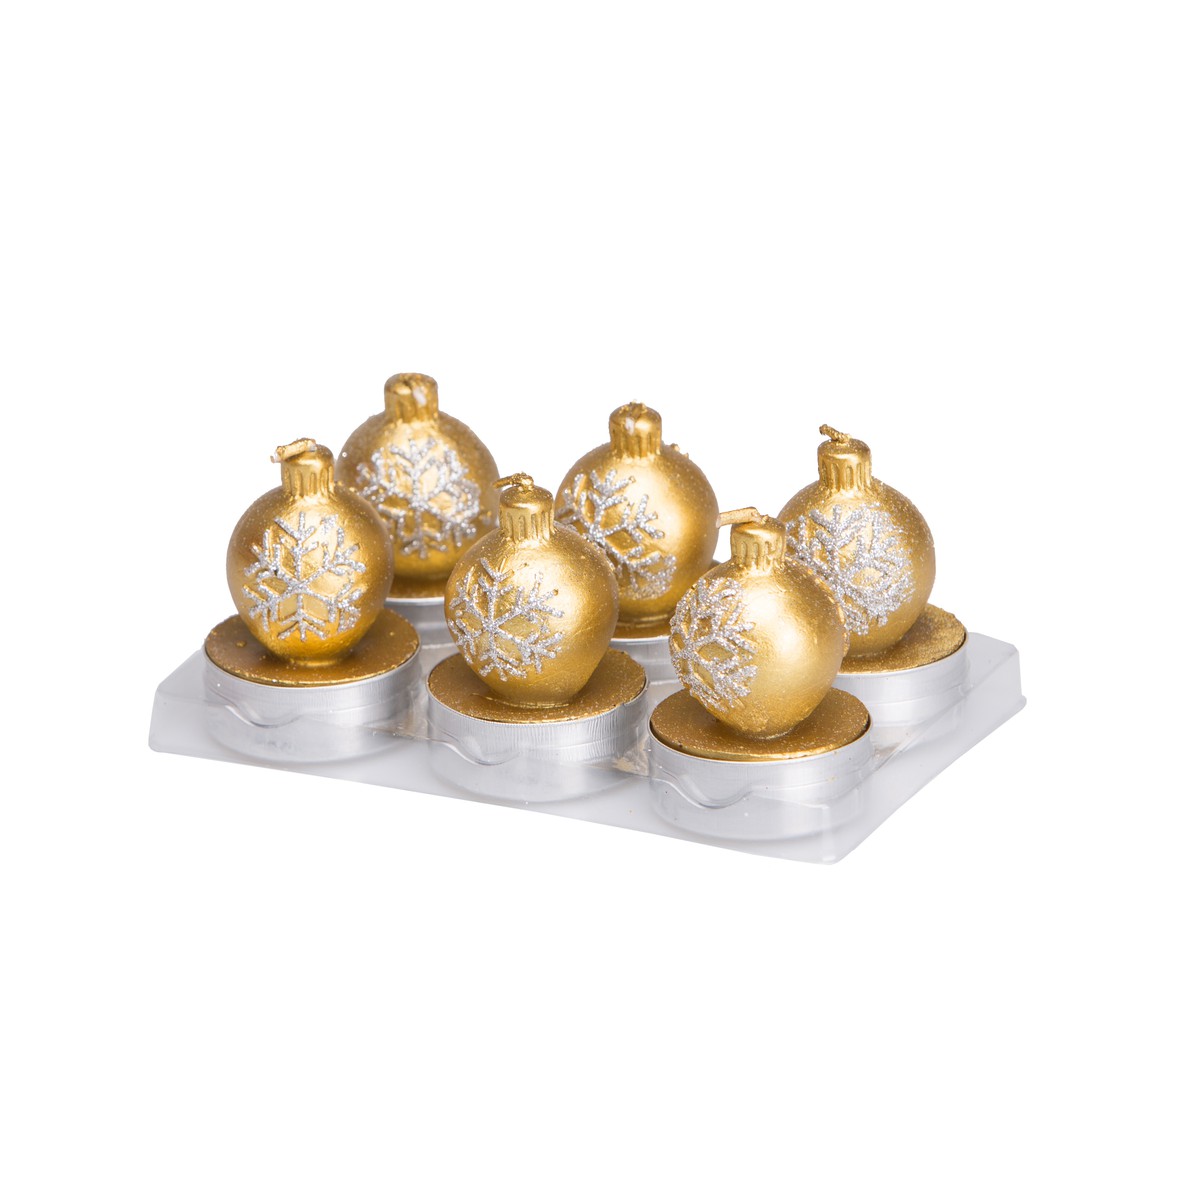   Bougies Boule de Noël Flocon en boite 6pcs Jaune or 14.1x9.3x5.8cm